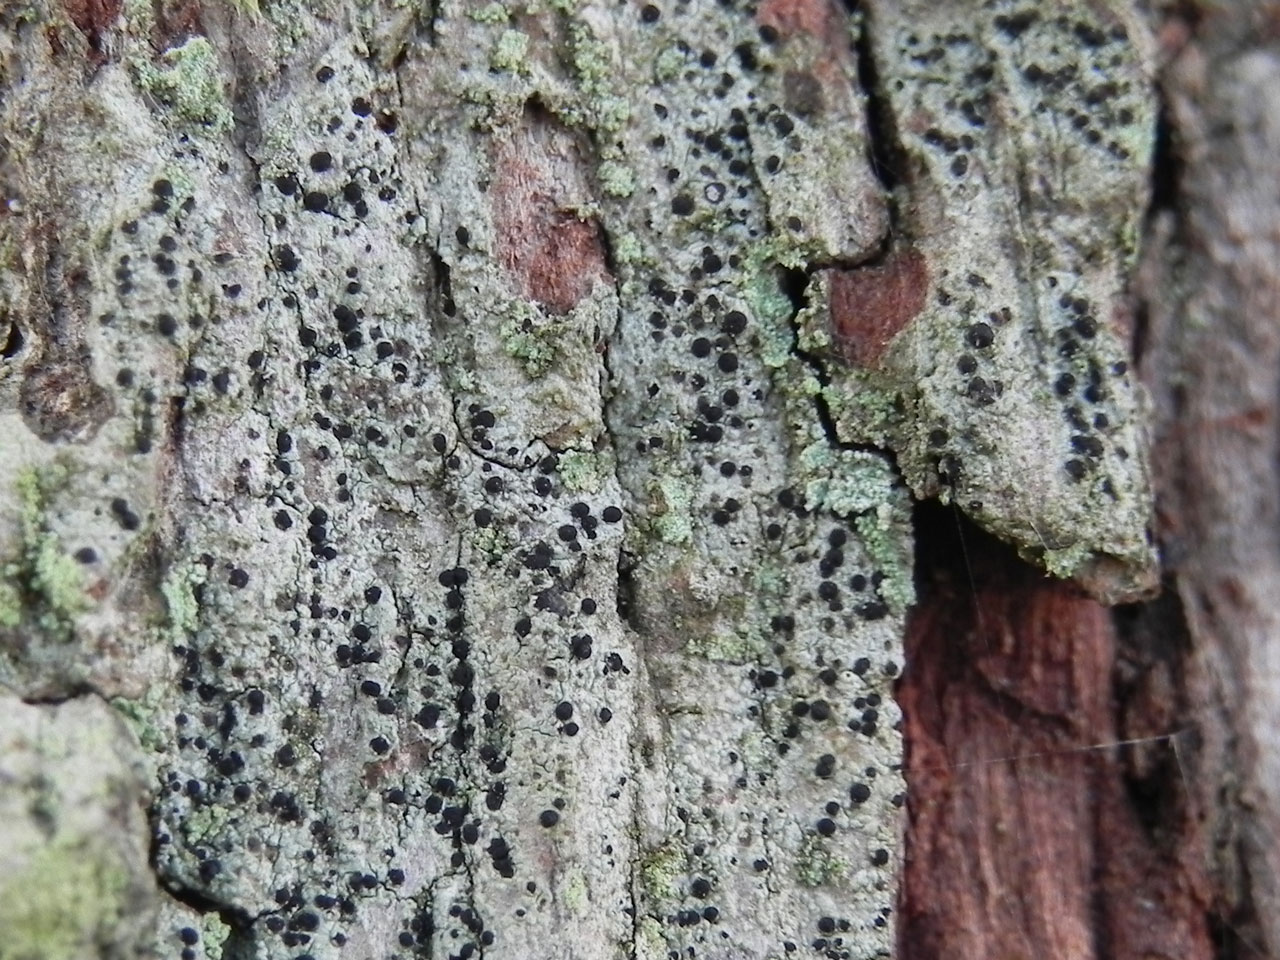 Buellia hyperbolica, Oak, Bartley Green, New Forest